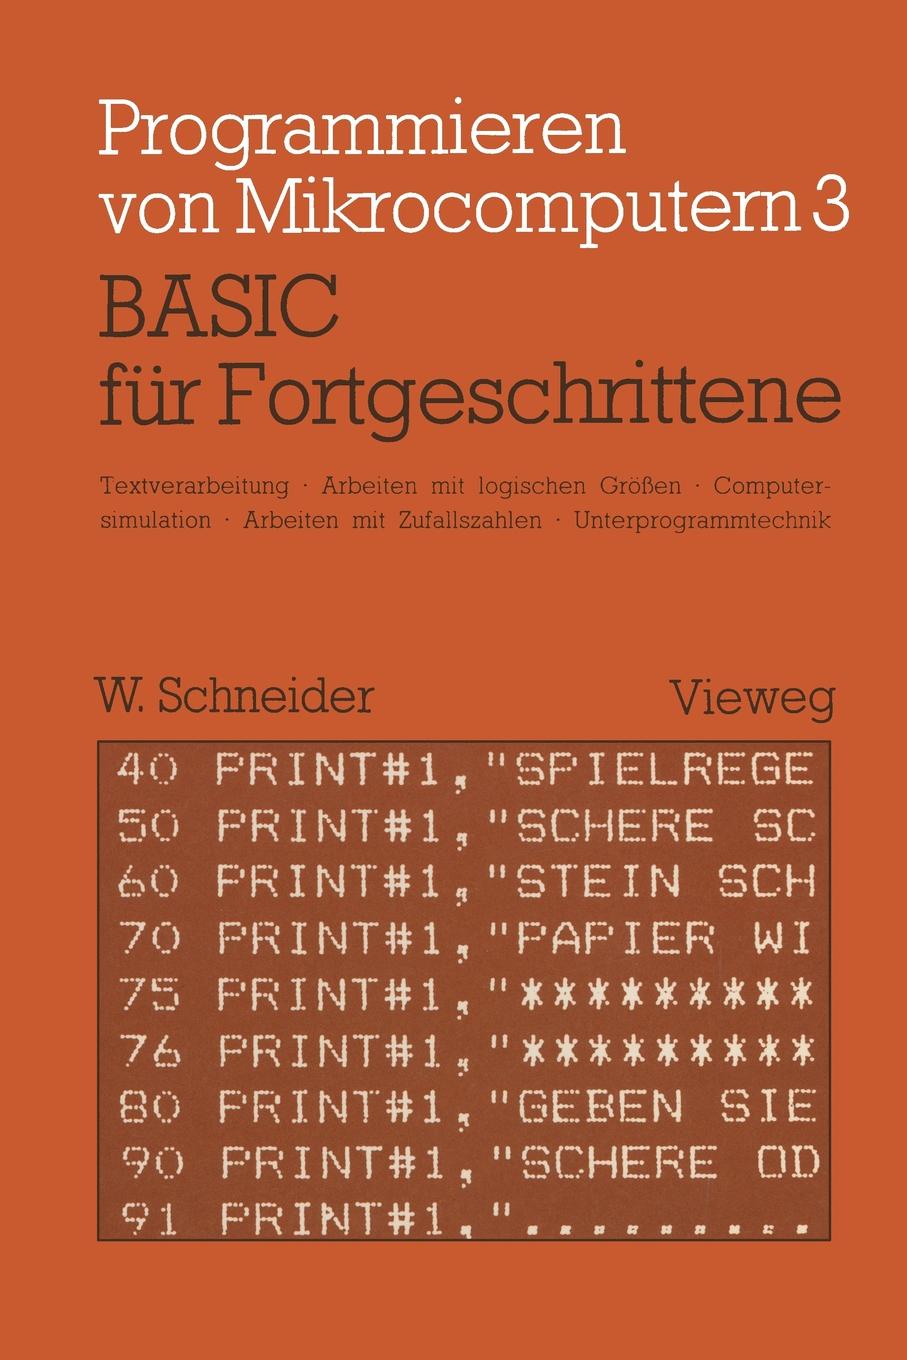 BASIC fur Fortgeschrittene. Textverarbeitung, Arbeiten mit logischen Grossen, Computersimulation Arbeiten mit Zufallszahlen Unterprogrammtechnik